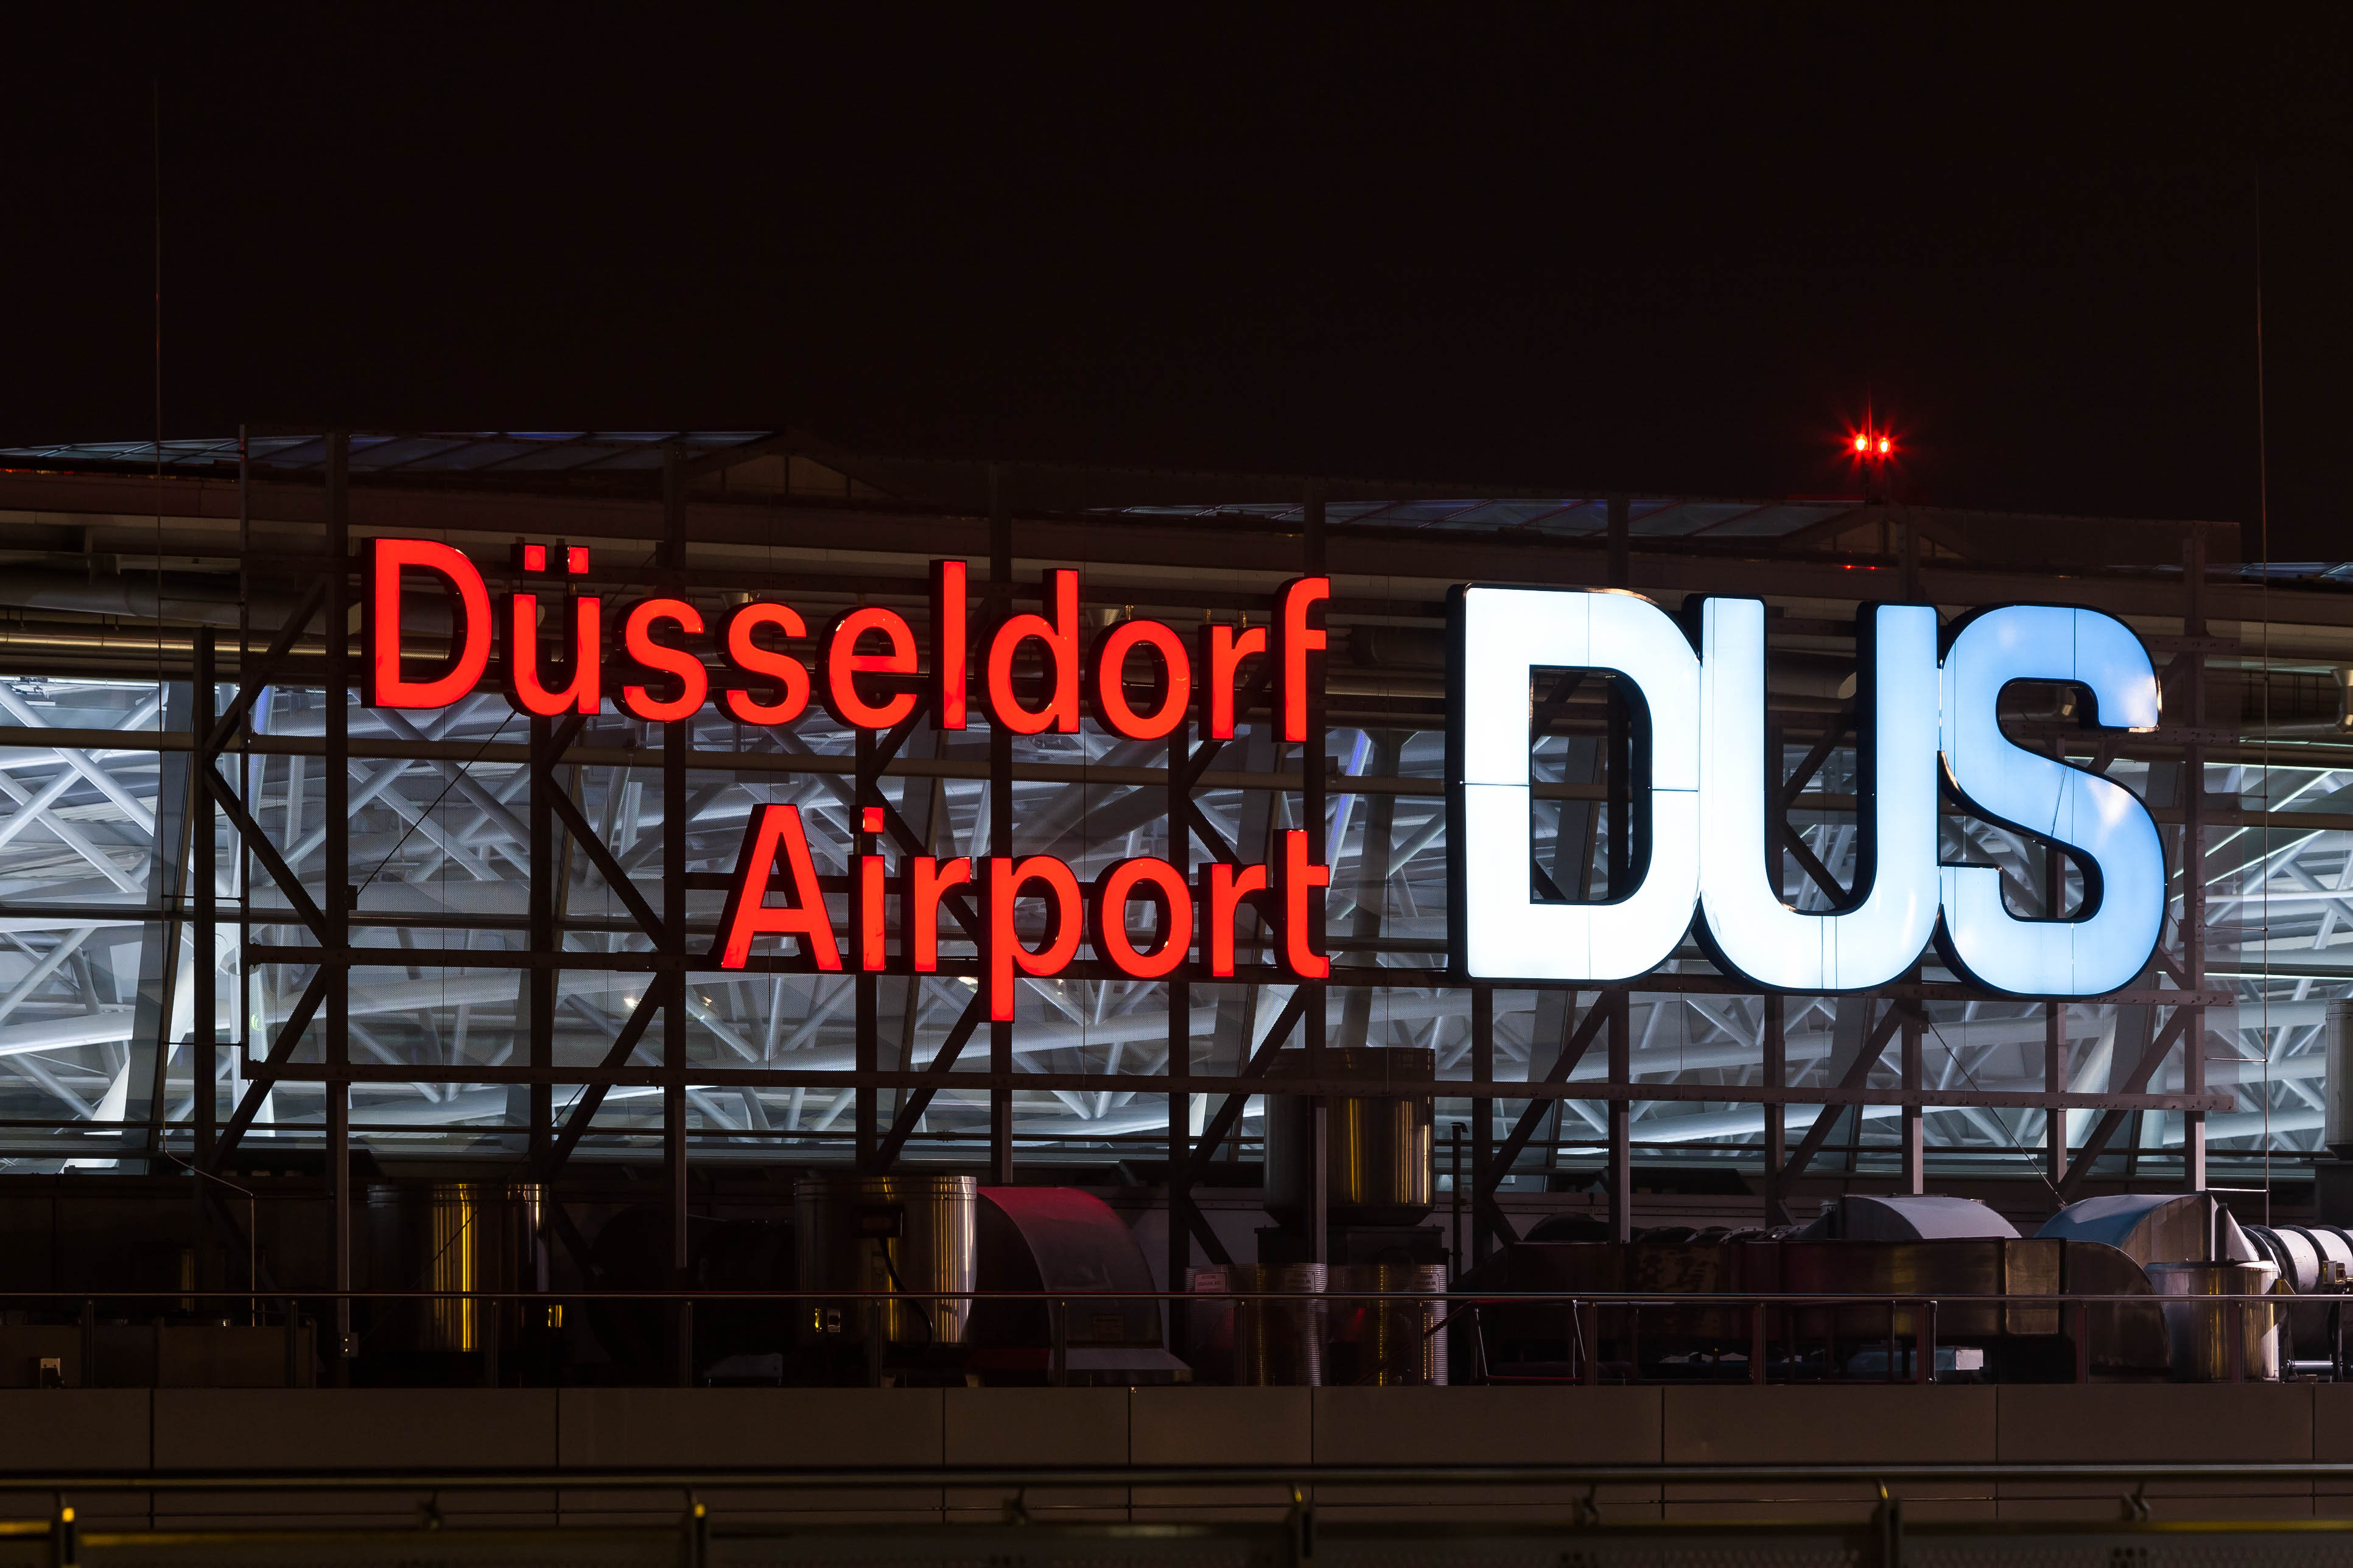 Dusseldorf Airport Arc